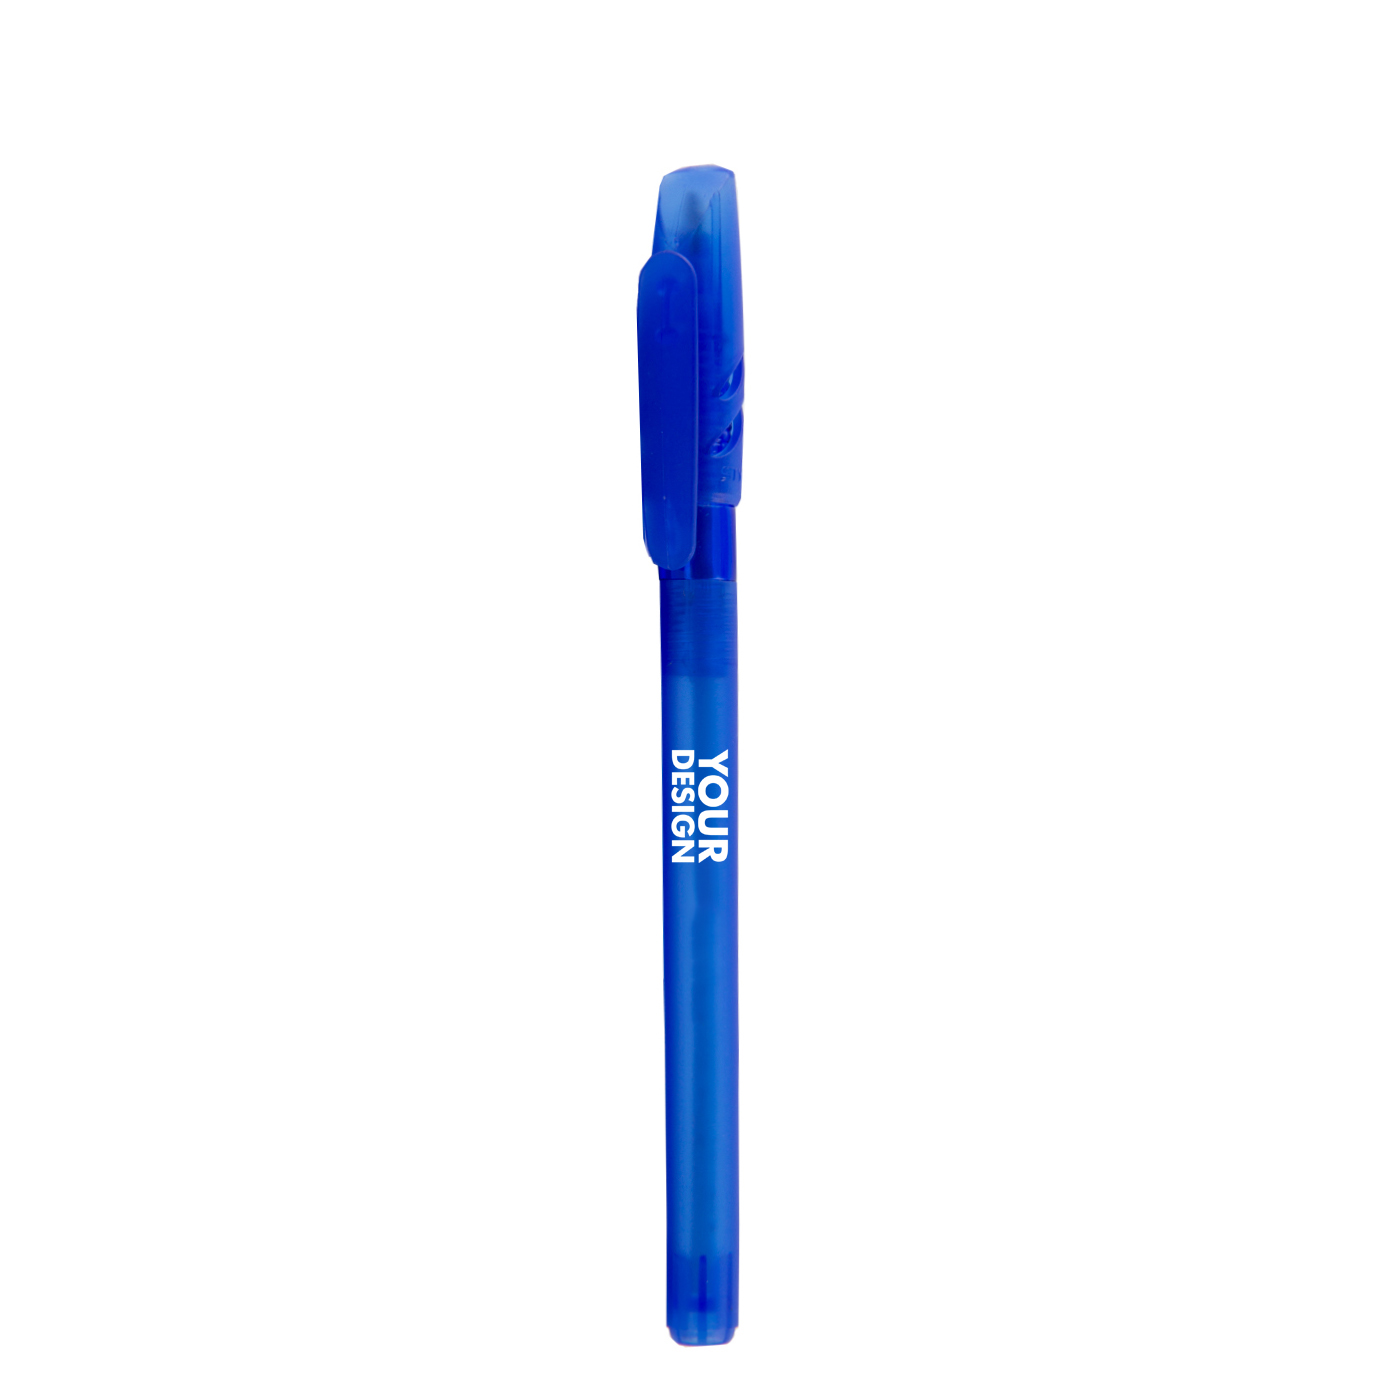 Transparent Plastic Ballpoint Pen With Venture Cap1